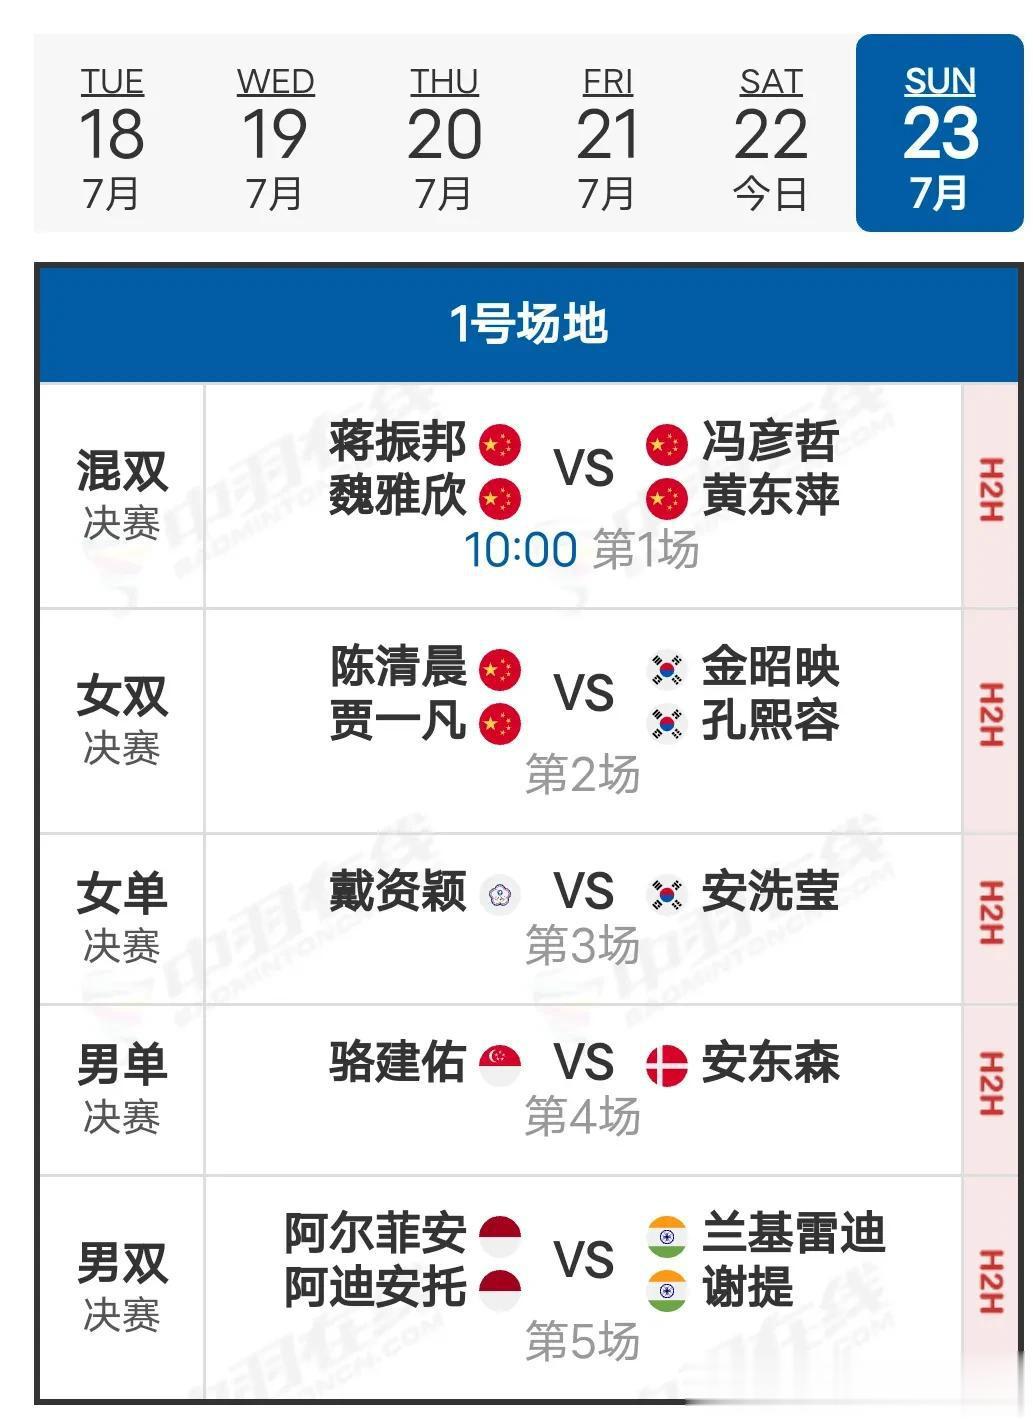  23决赛赛程
     23日决赛于北京时间10:00开赛，国羽两个项目进入决